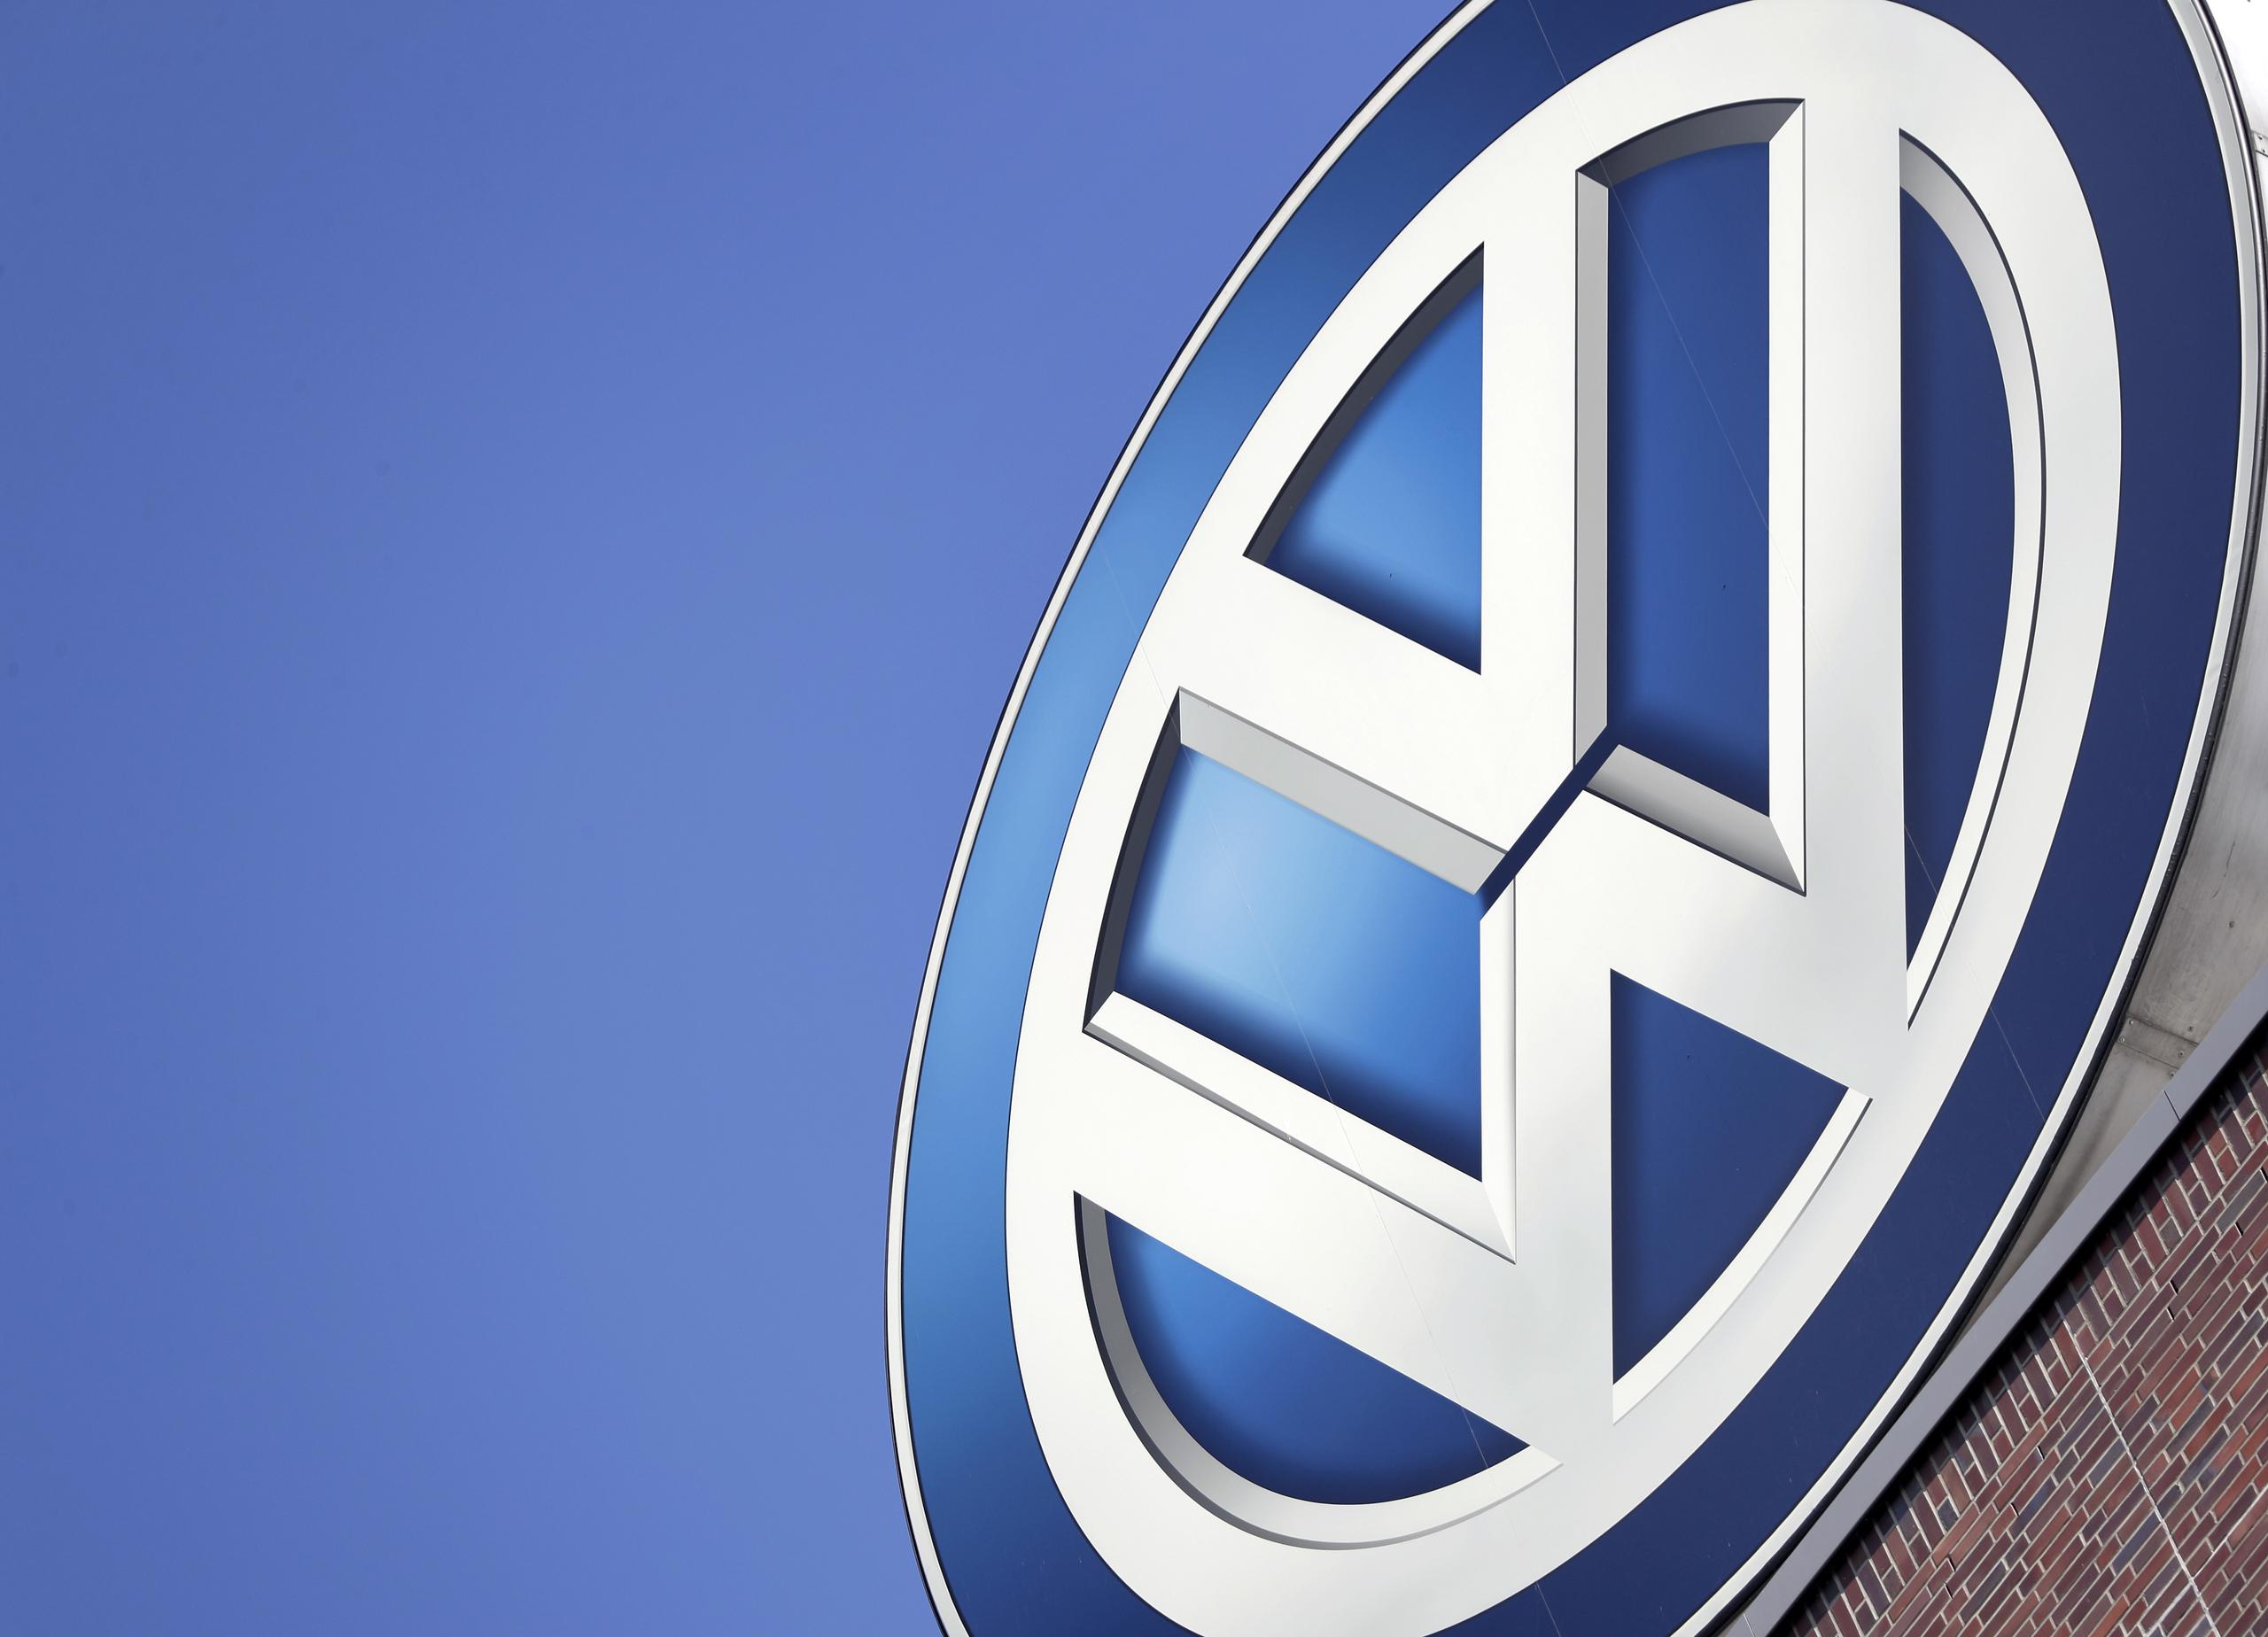 La automotriz Volkswagen fue fundada durante el nazismo para producir “el automóvil del pueblo”.